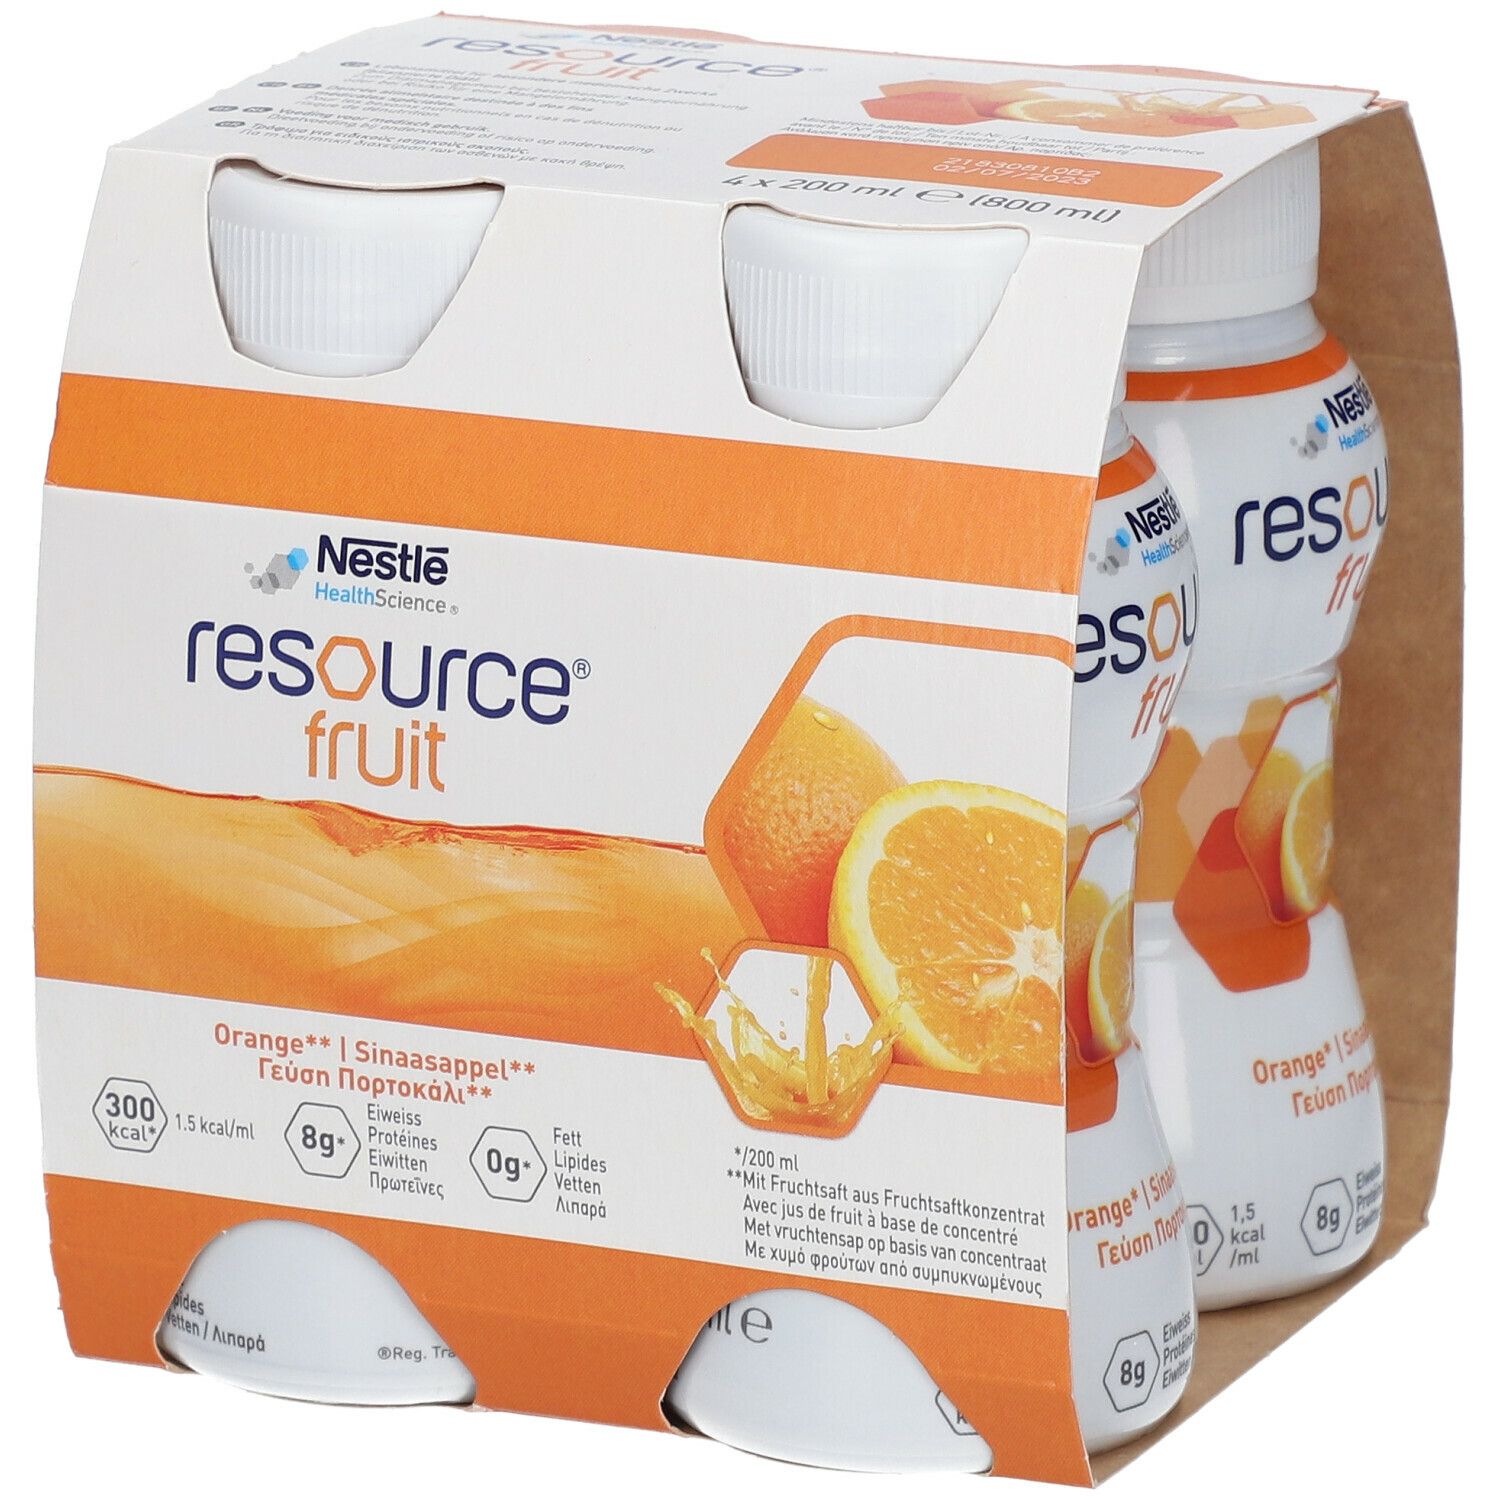 Nestlé resource® fruit Orange